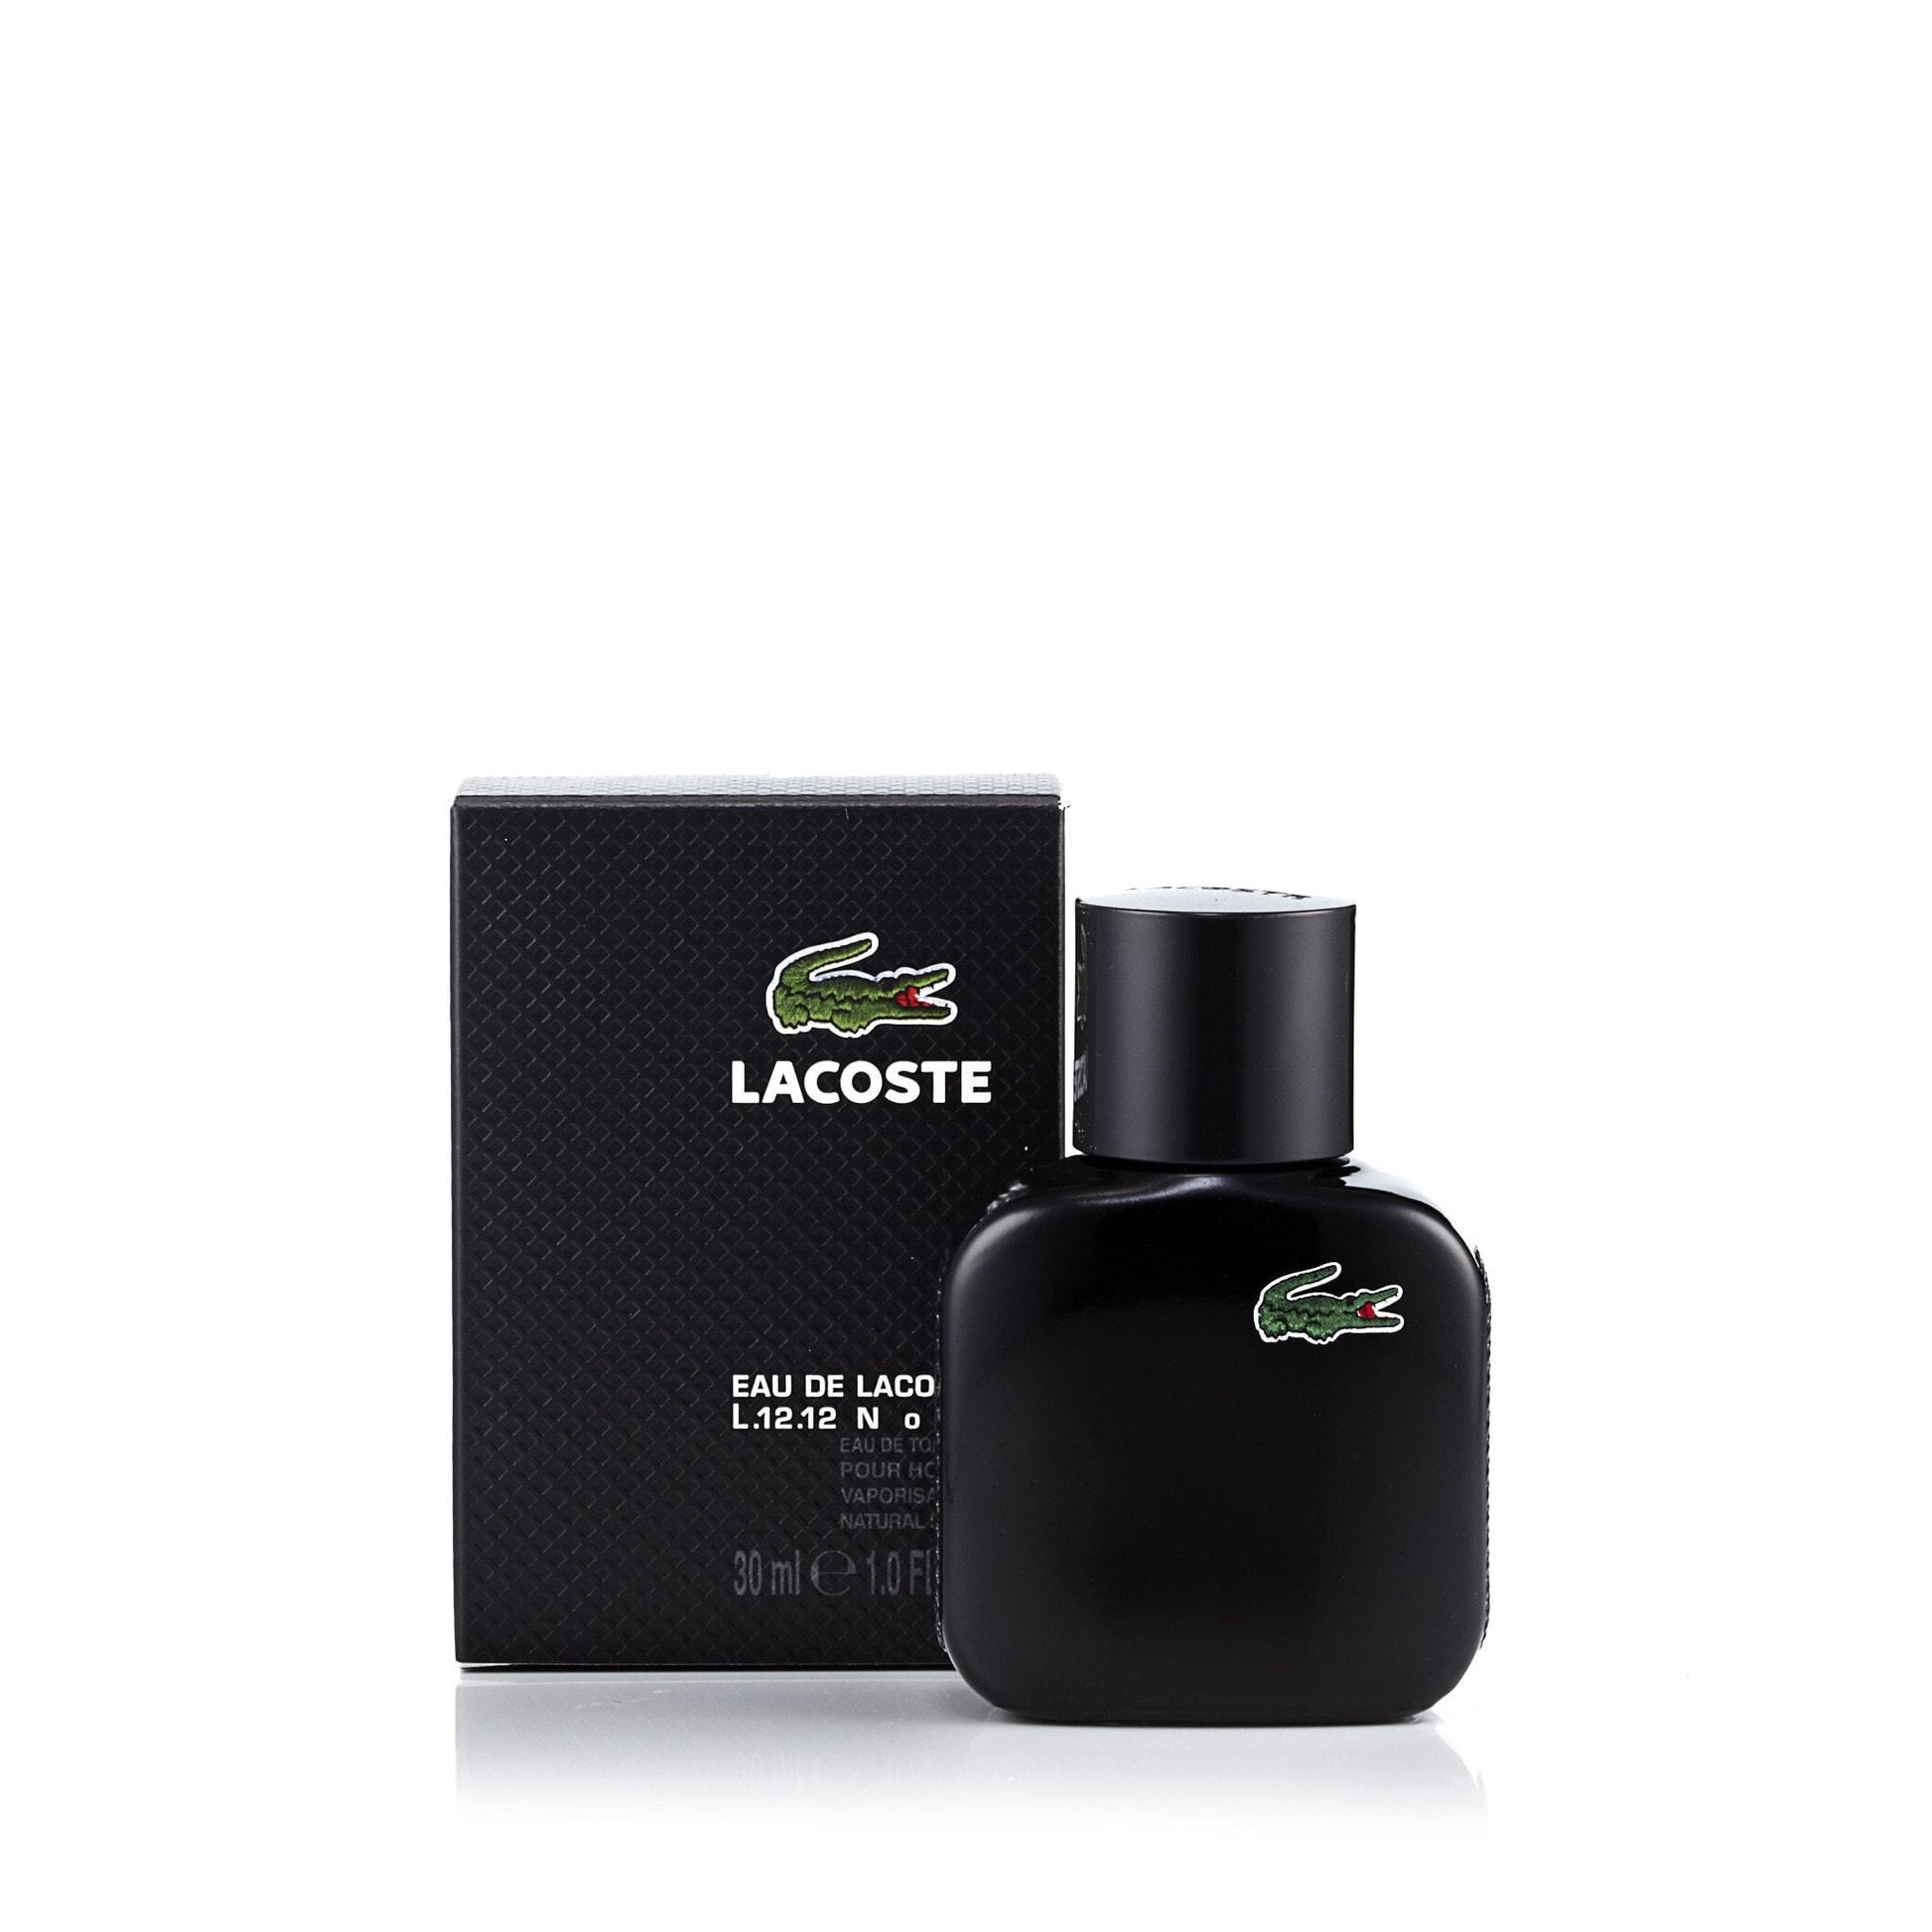 L.12.12 Noir Eau de Toilette Spray for Men by Lacoste, Product image 6